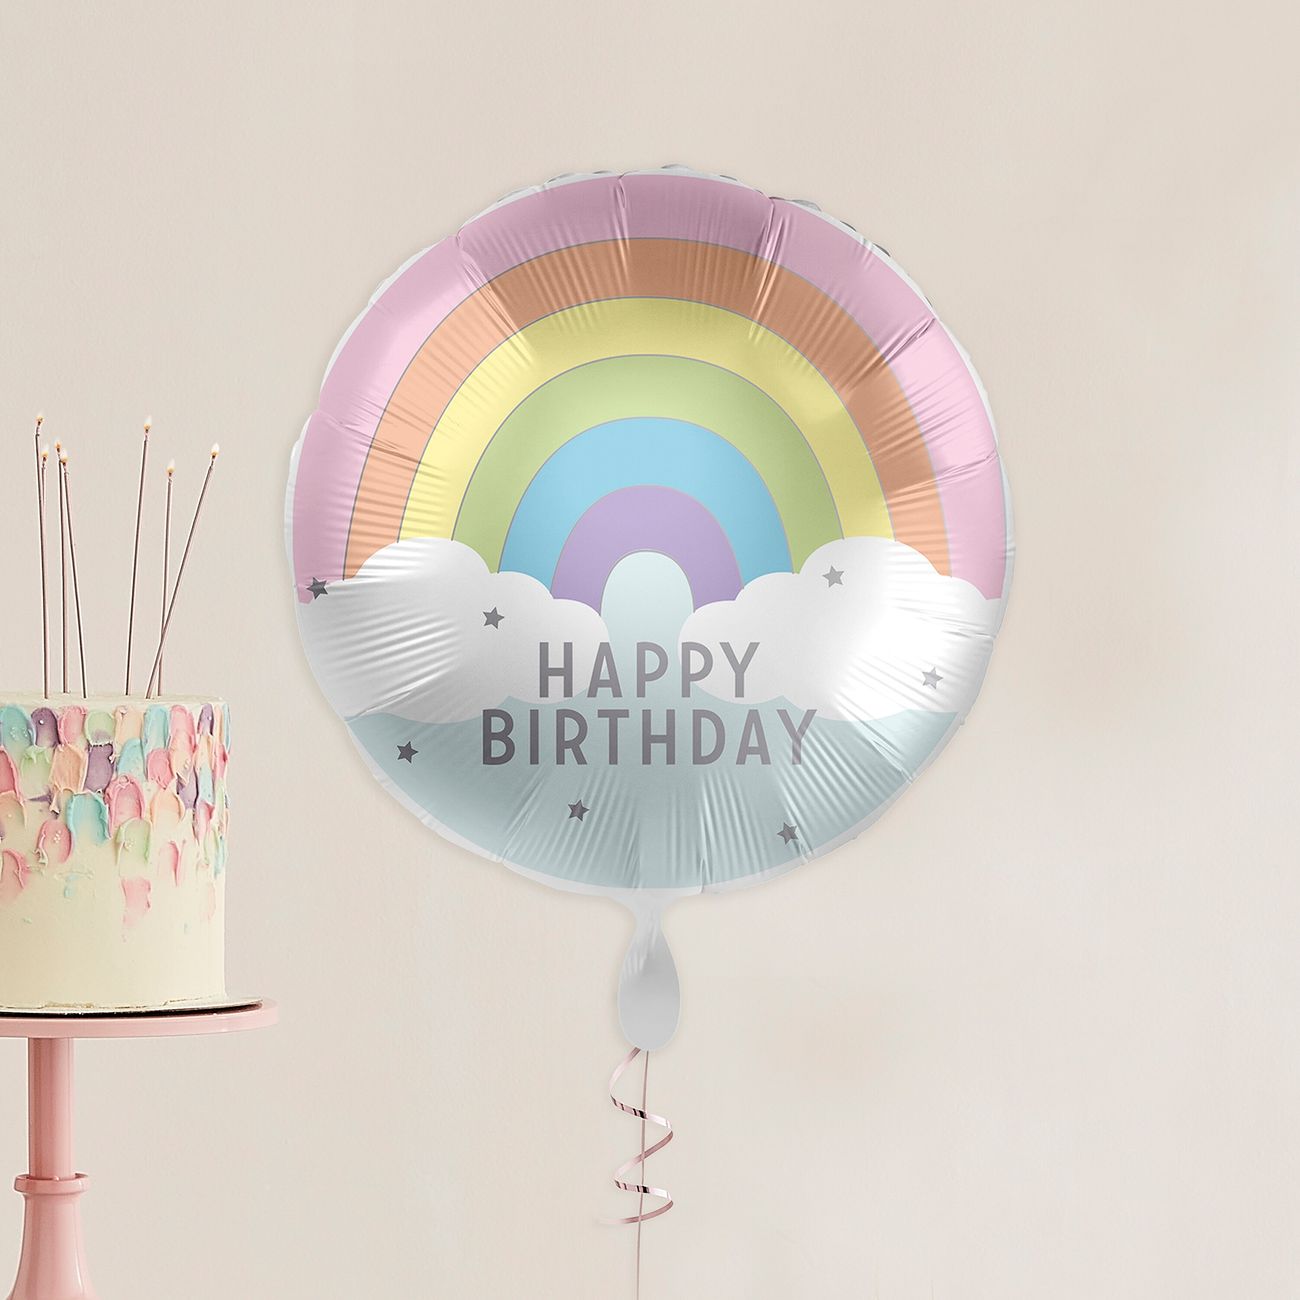 folieballong-happy-birthday-100164-3